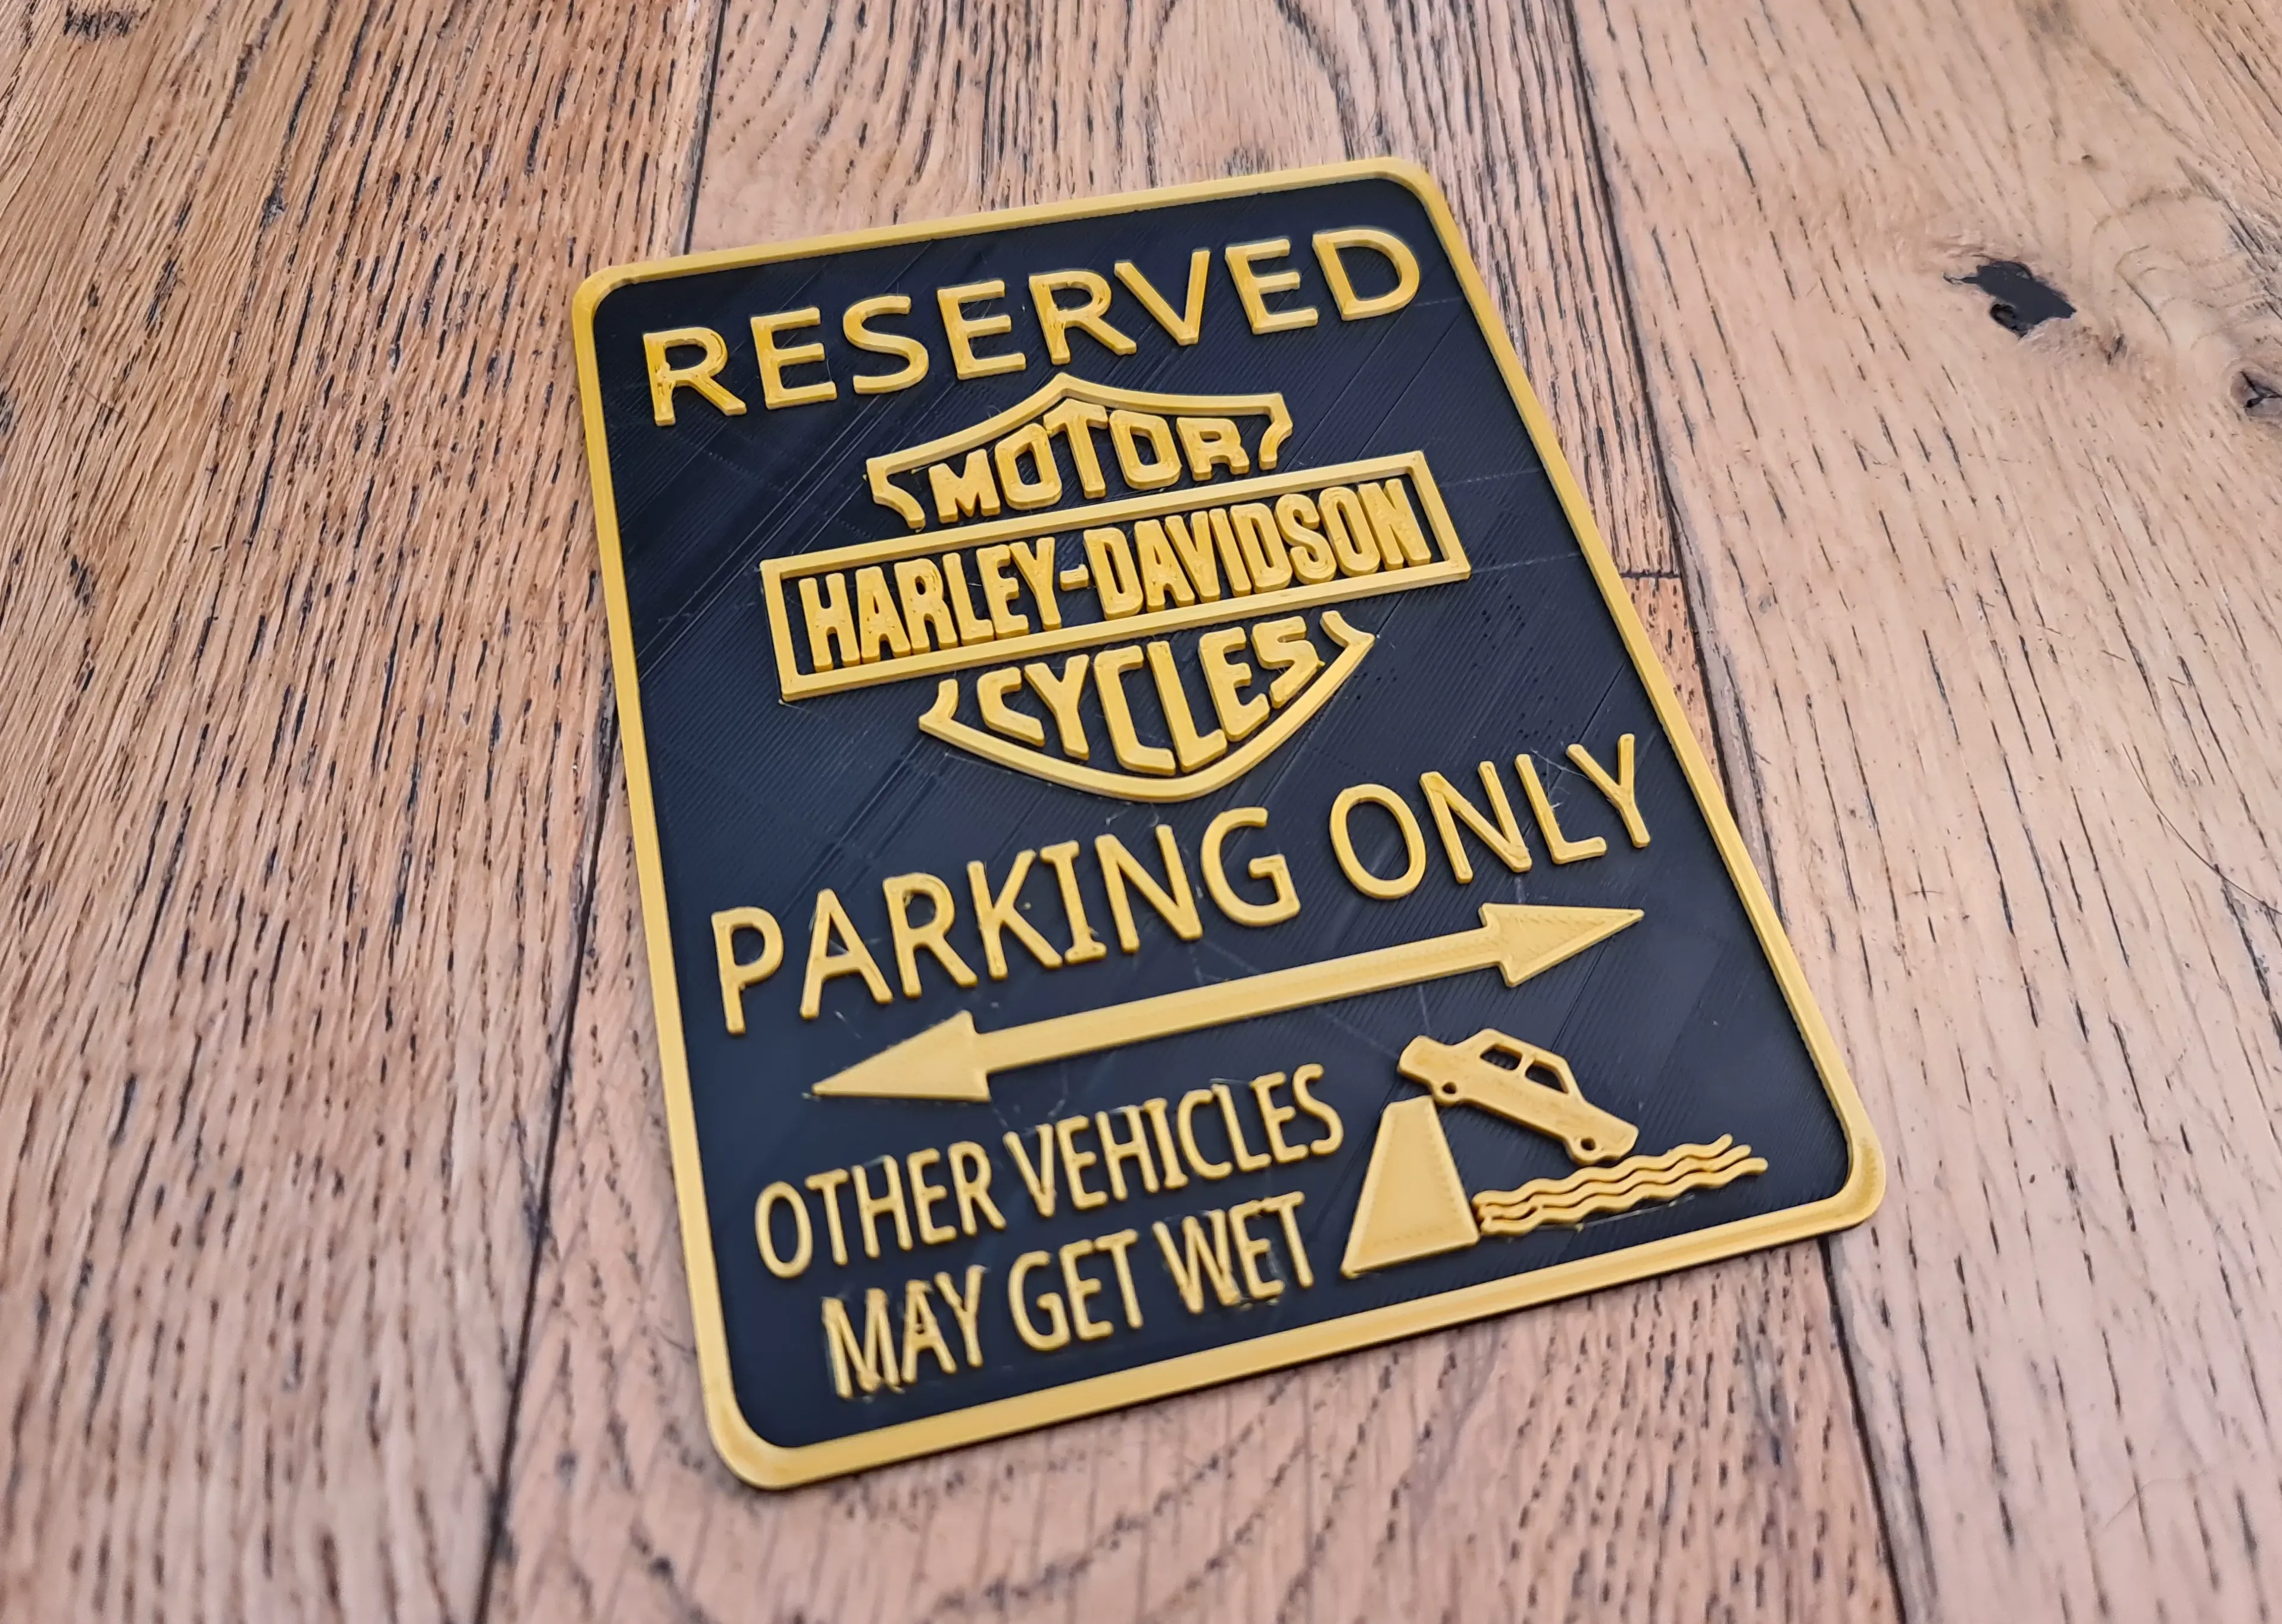 Harley Davidson Motorcycles Workshop Garage Parking Sign